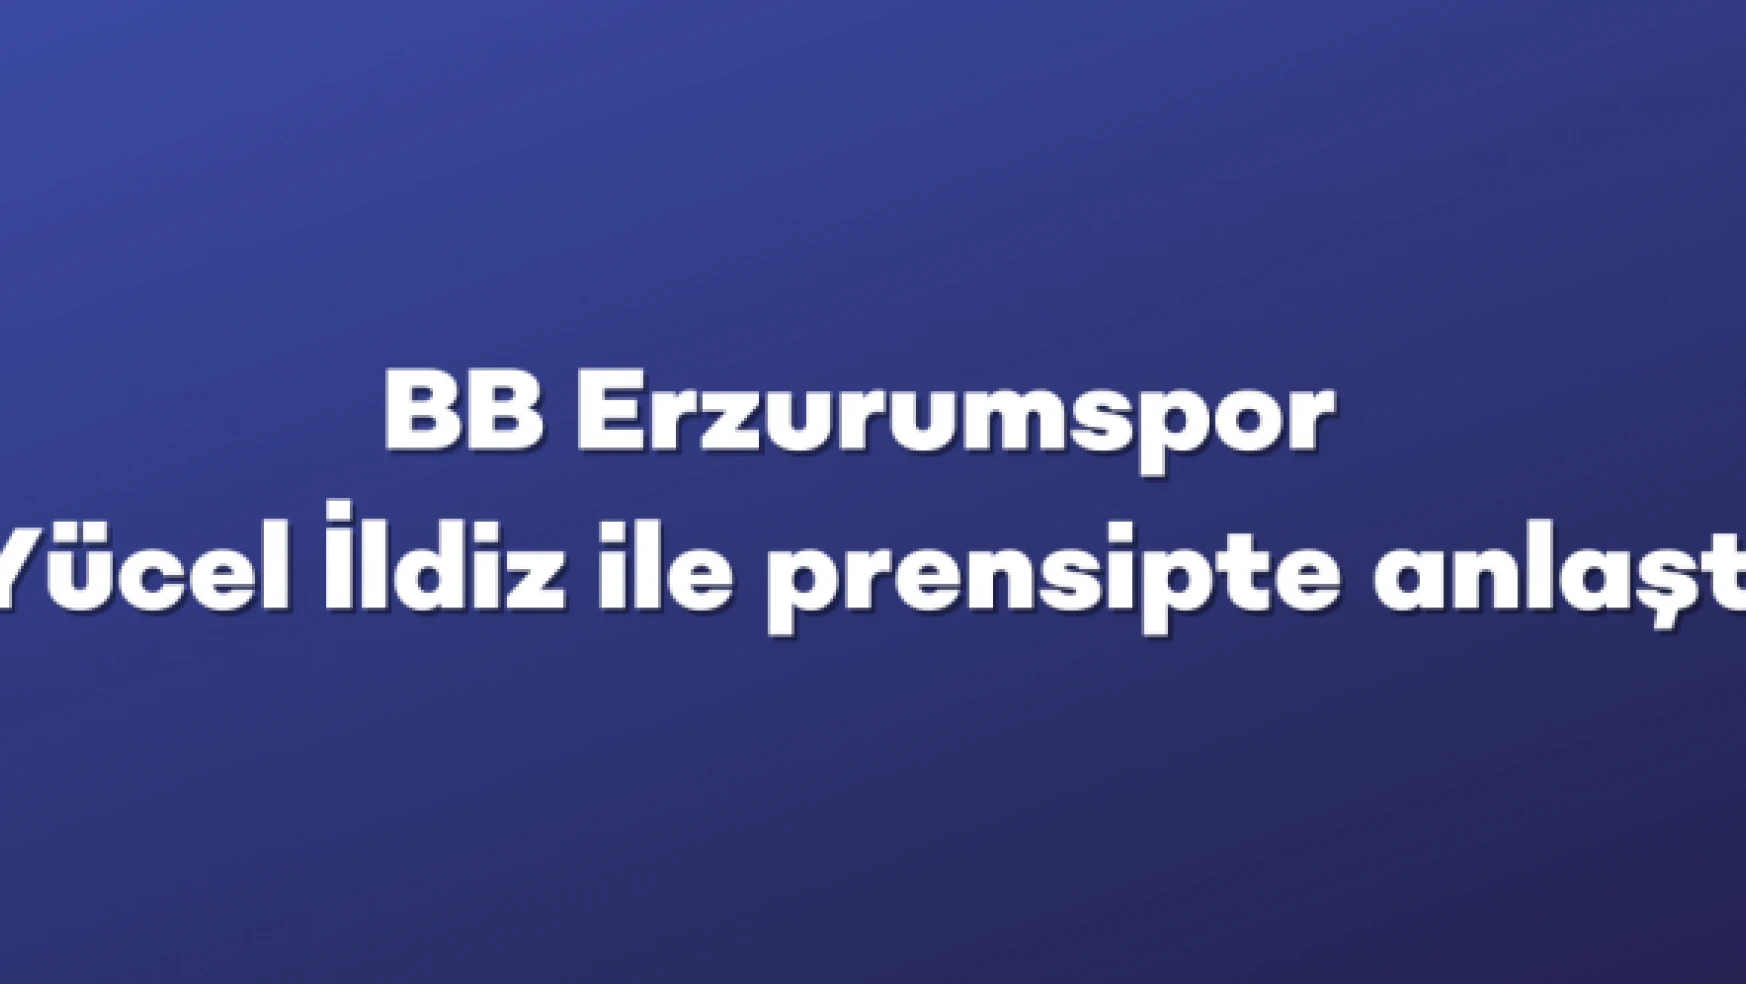 BB Erzurumspor, teknik direktör Yücel İldiz ile prensipte anlaştı